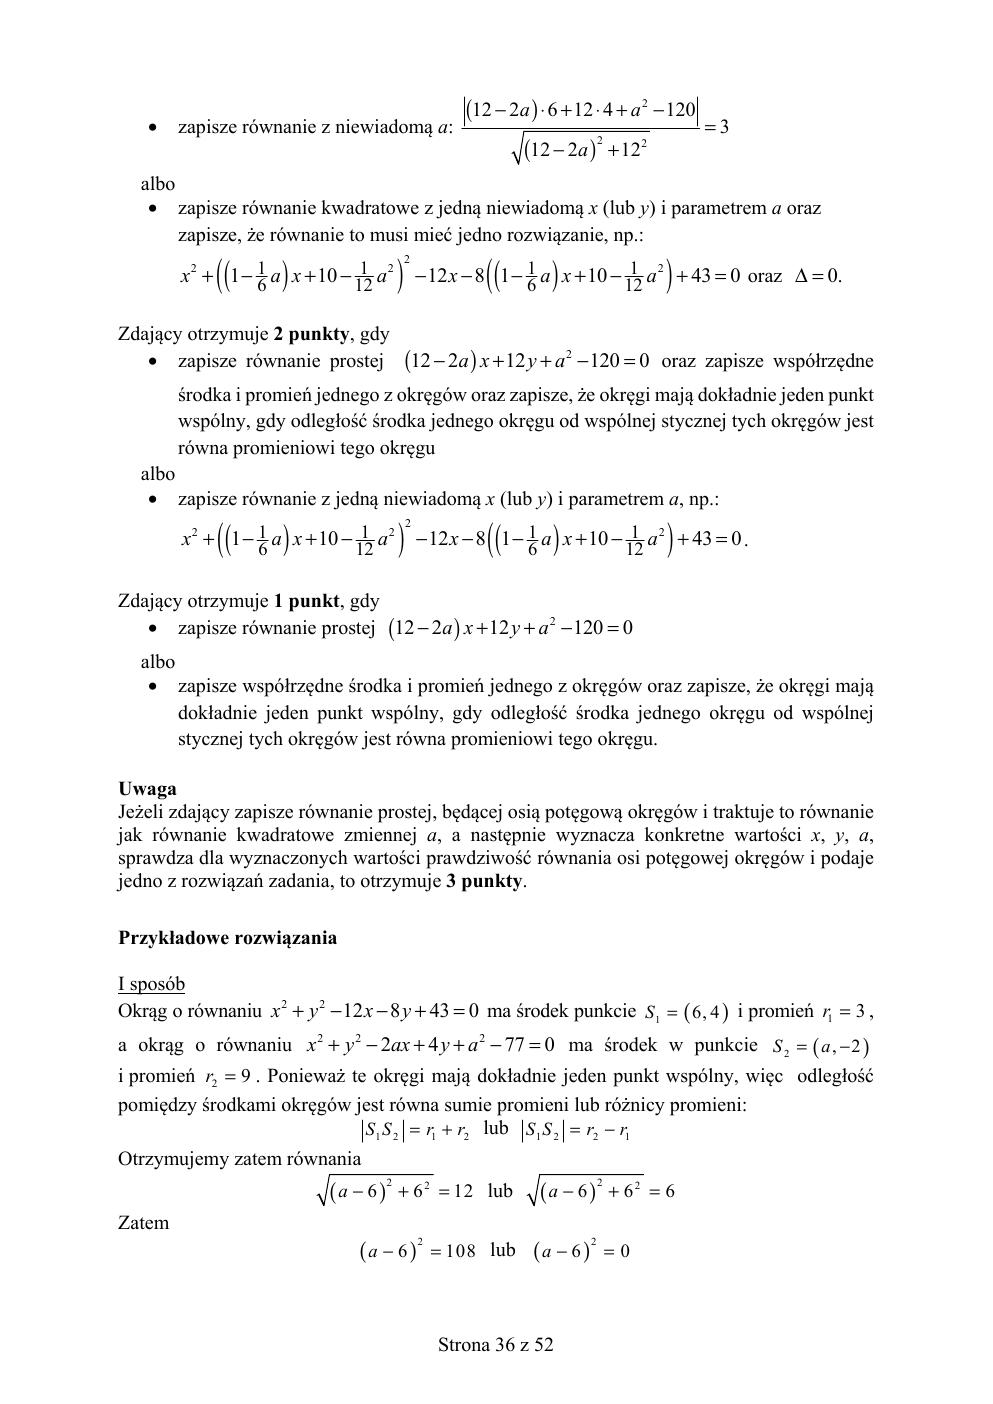 matematyka rozszerzony - matura 2019 - odpowiedzi-36